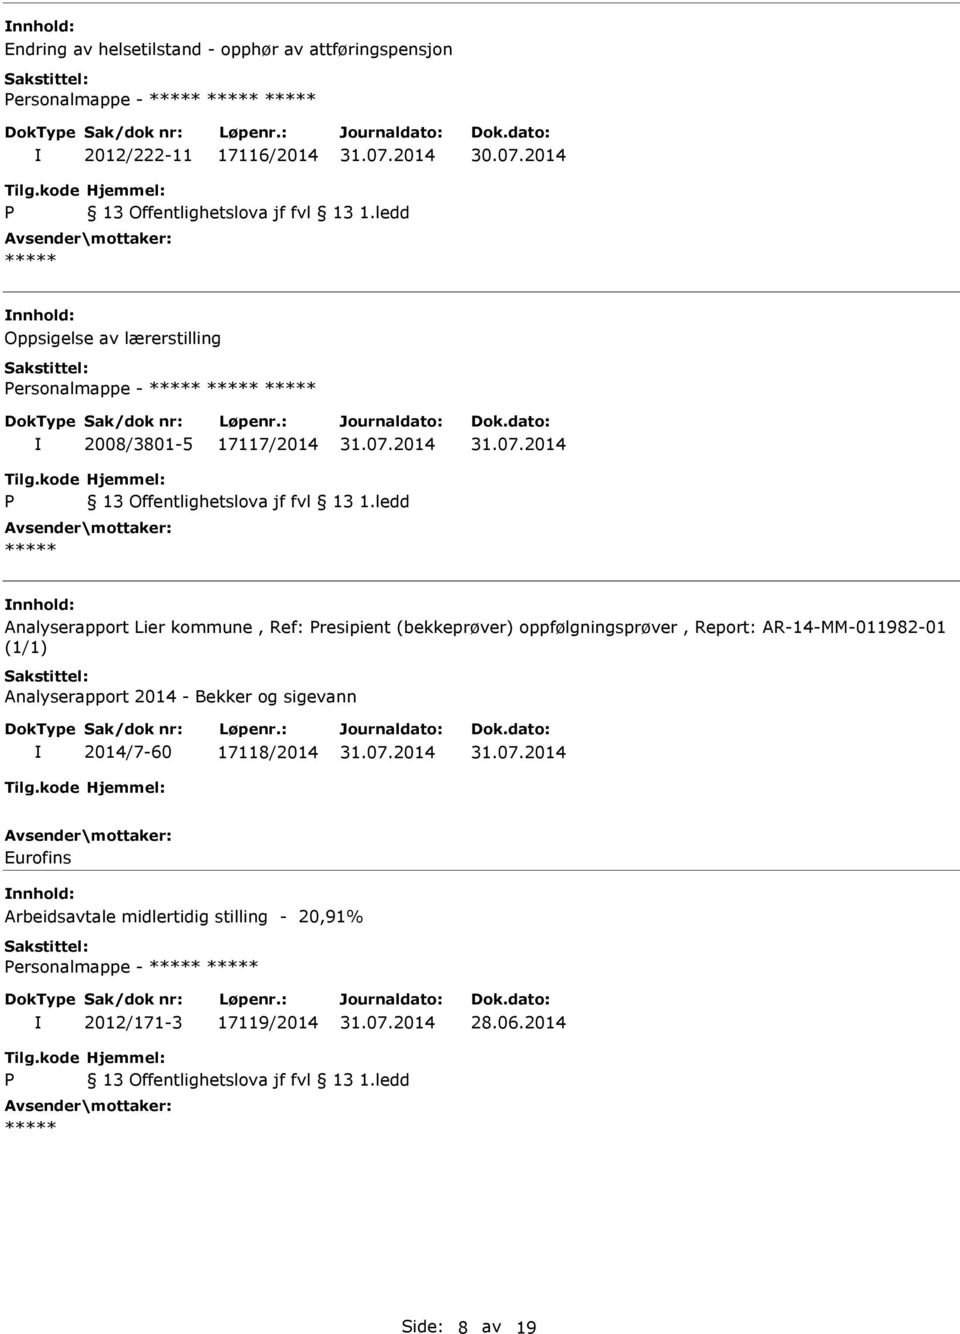 (bekkeprøver) oppfølgningsprøver, Report: AR-14-MM-011982-01 (1/1) Analyserapport 2014 - Bekker og sigevann 2014/7-60